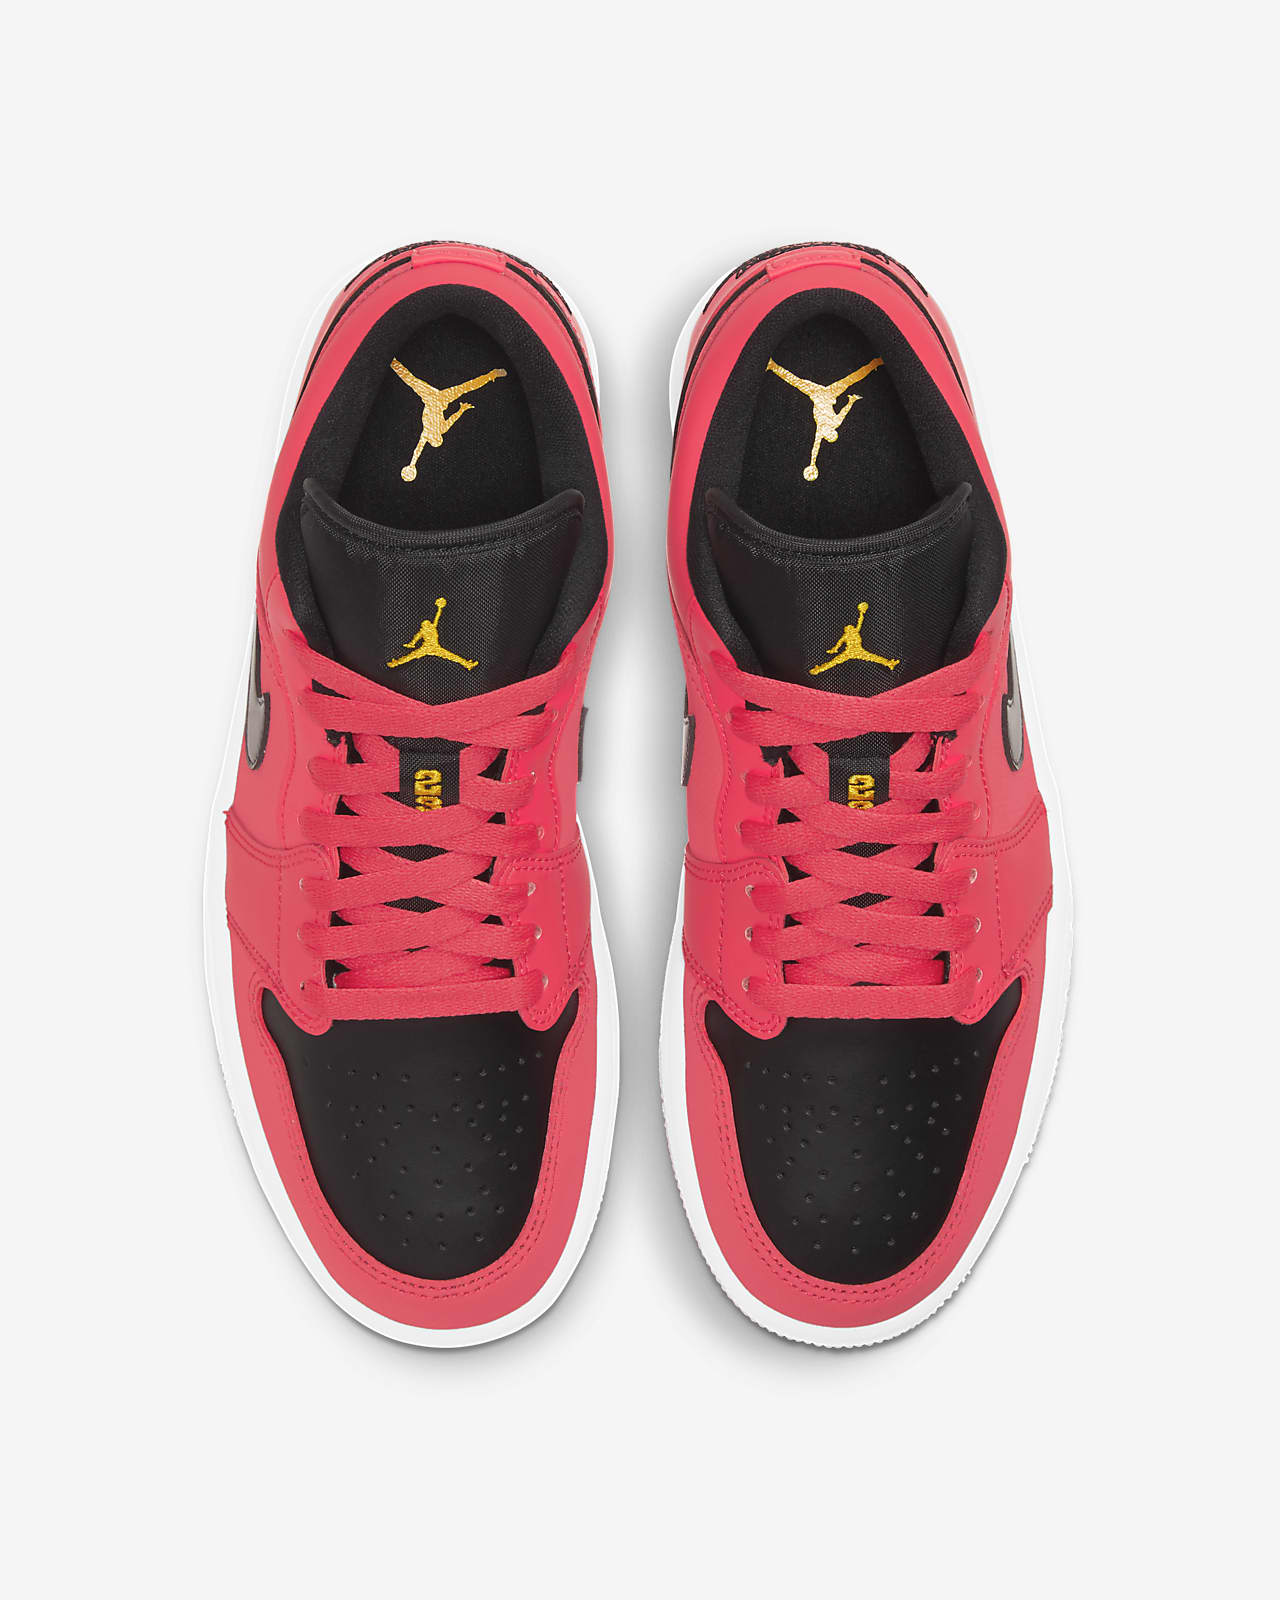 Air Jordan 1 Low Women S Shoe Nike Nl